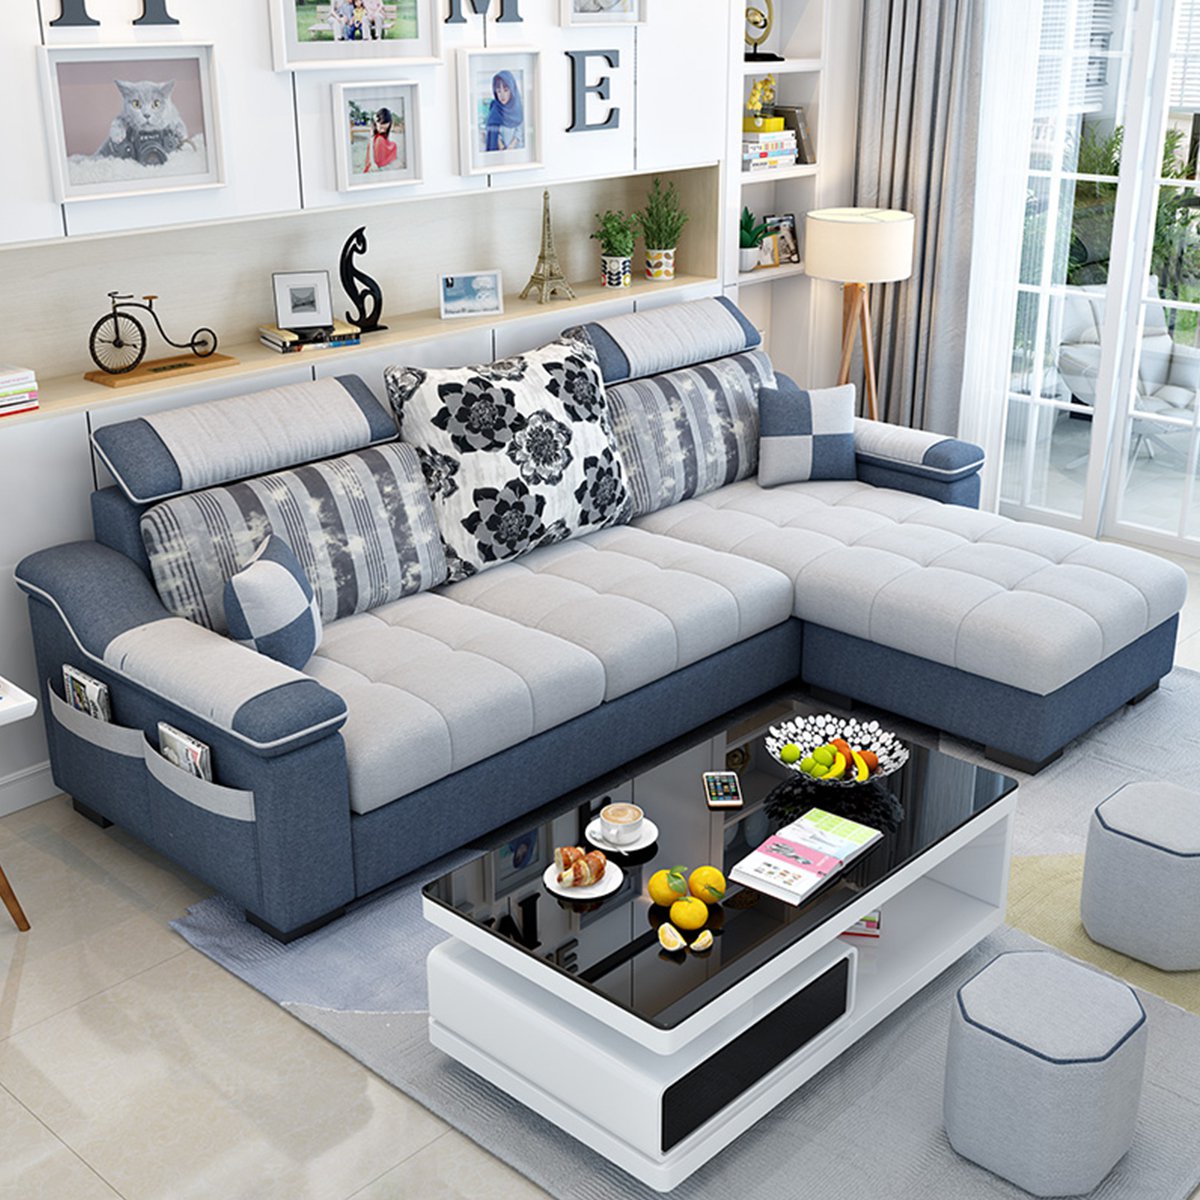 简约现代布沙发小户型客厅家具整装组合可拆洗转角三人位布艺沙发